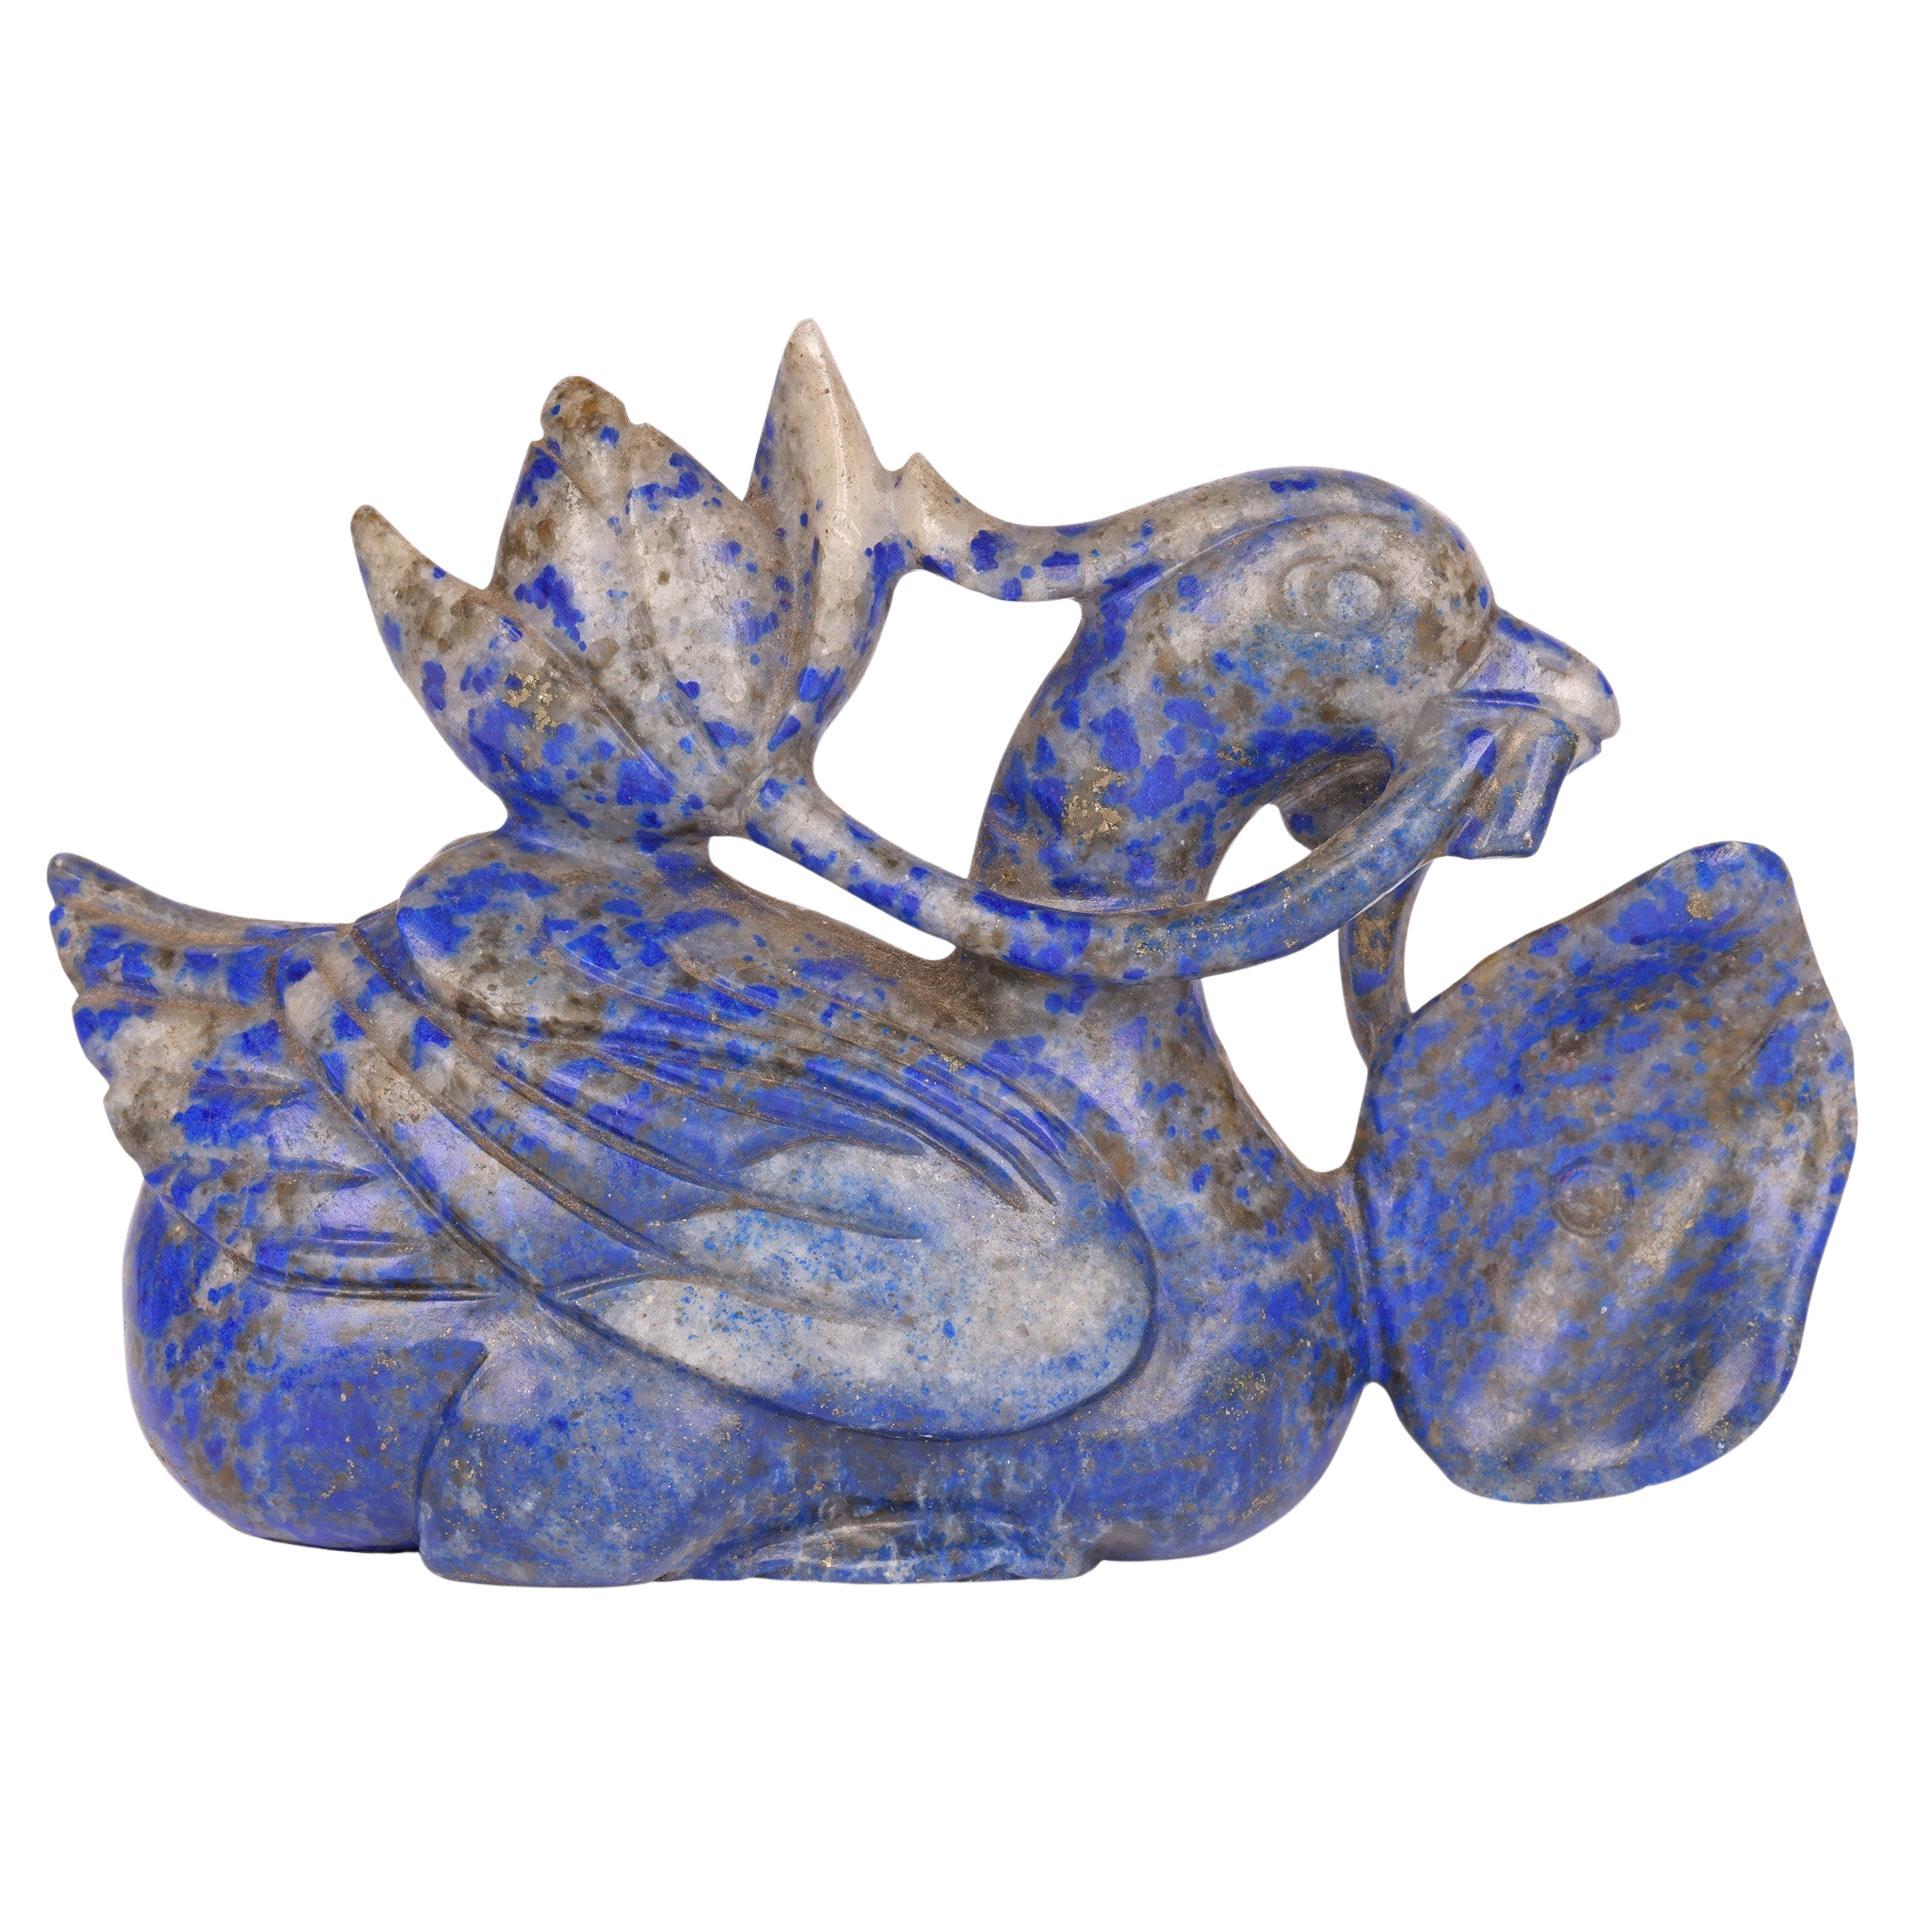 Chinesische geschnitzte Lapislazuli-Ente und Lotusblumenfigur  